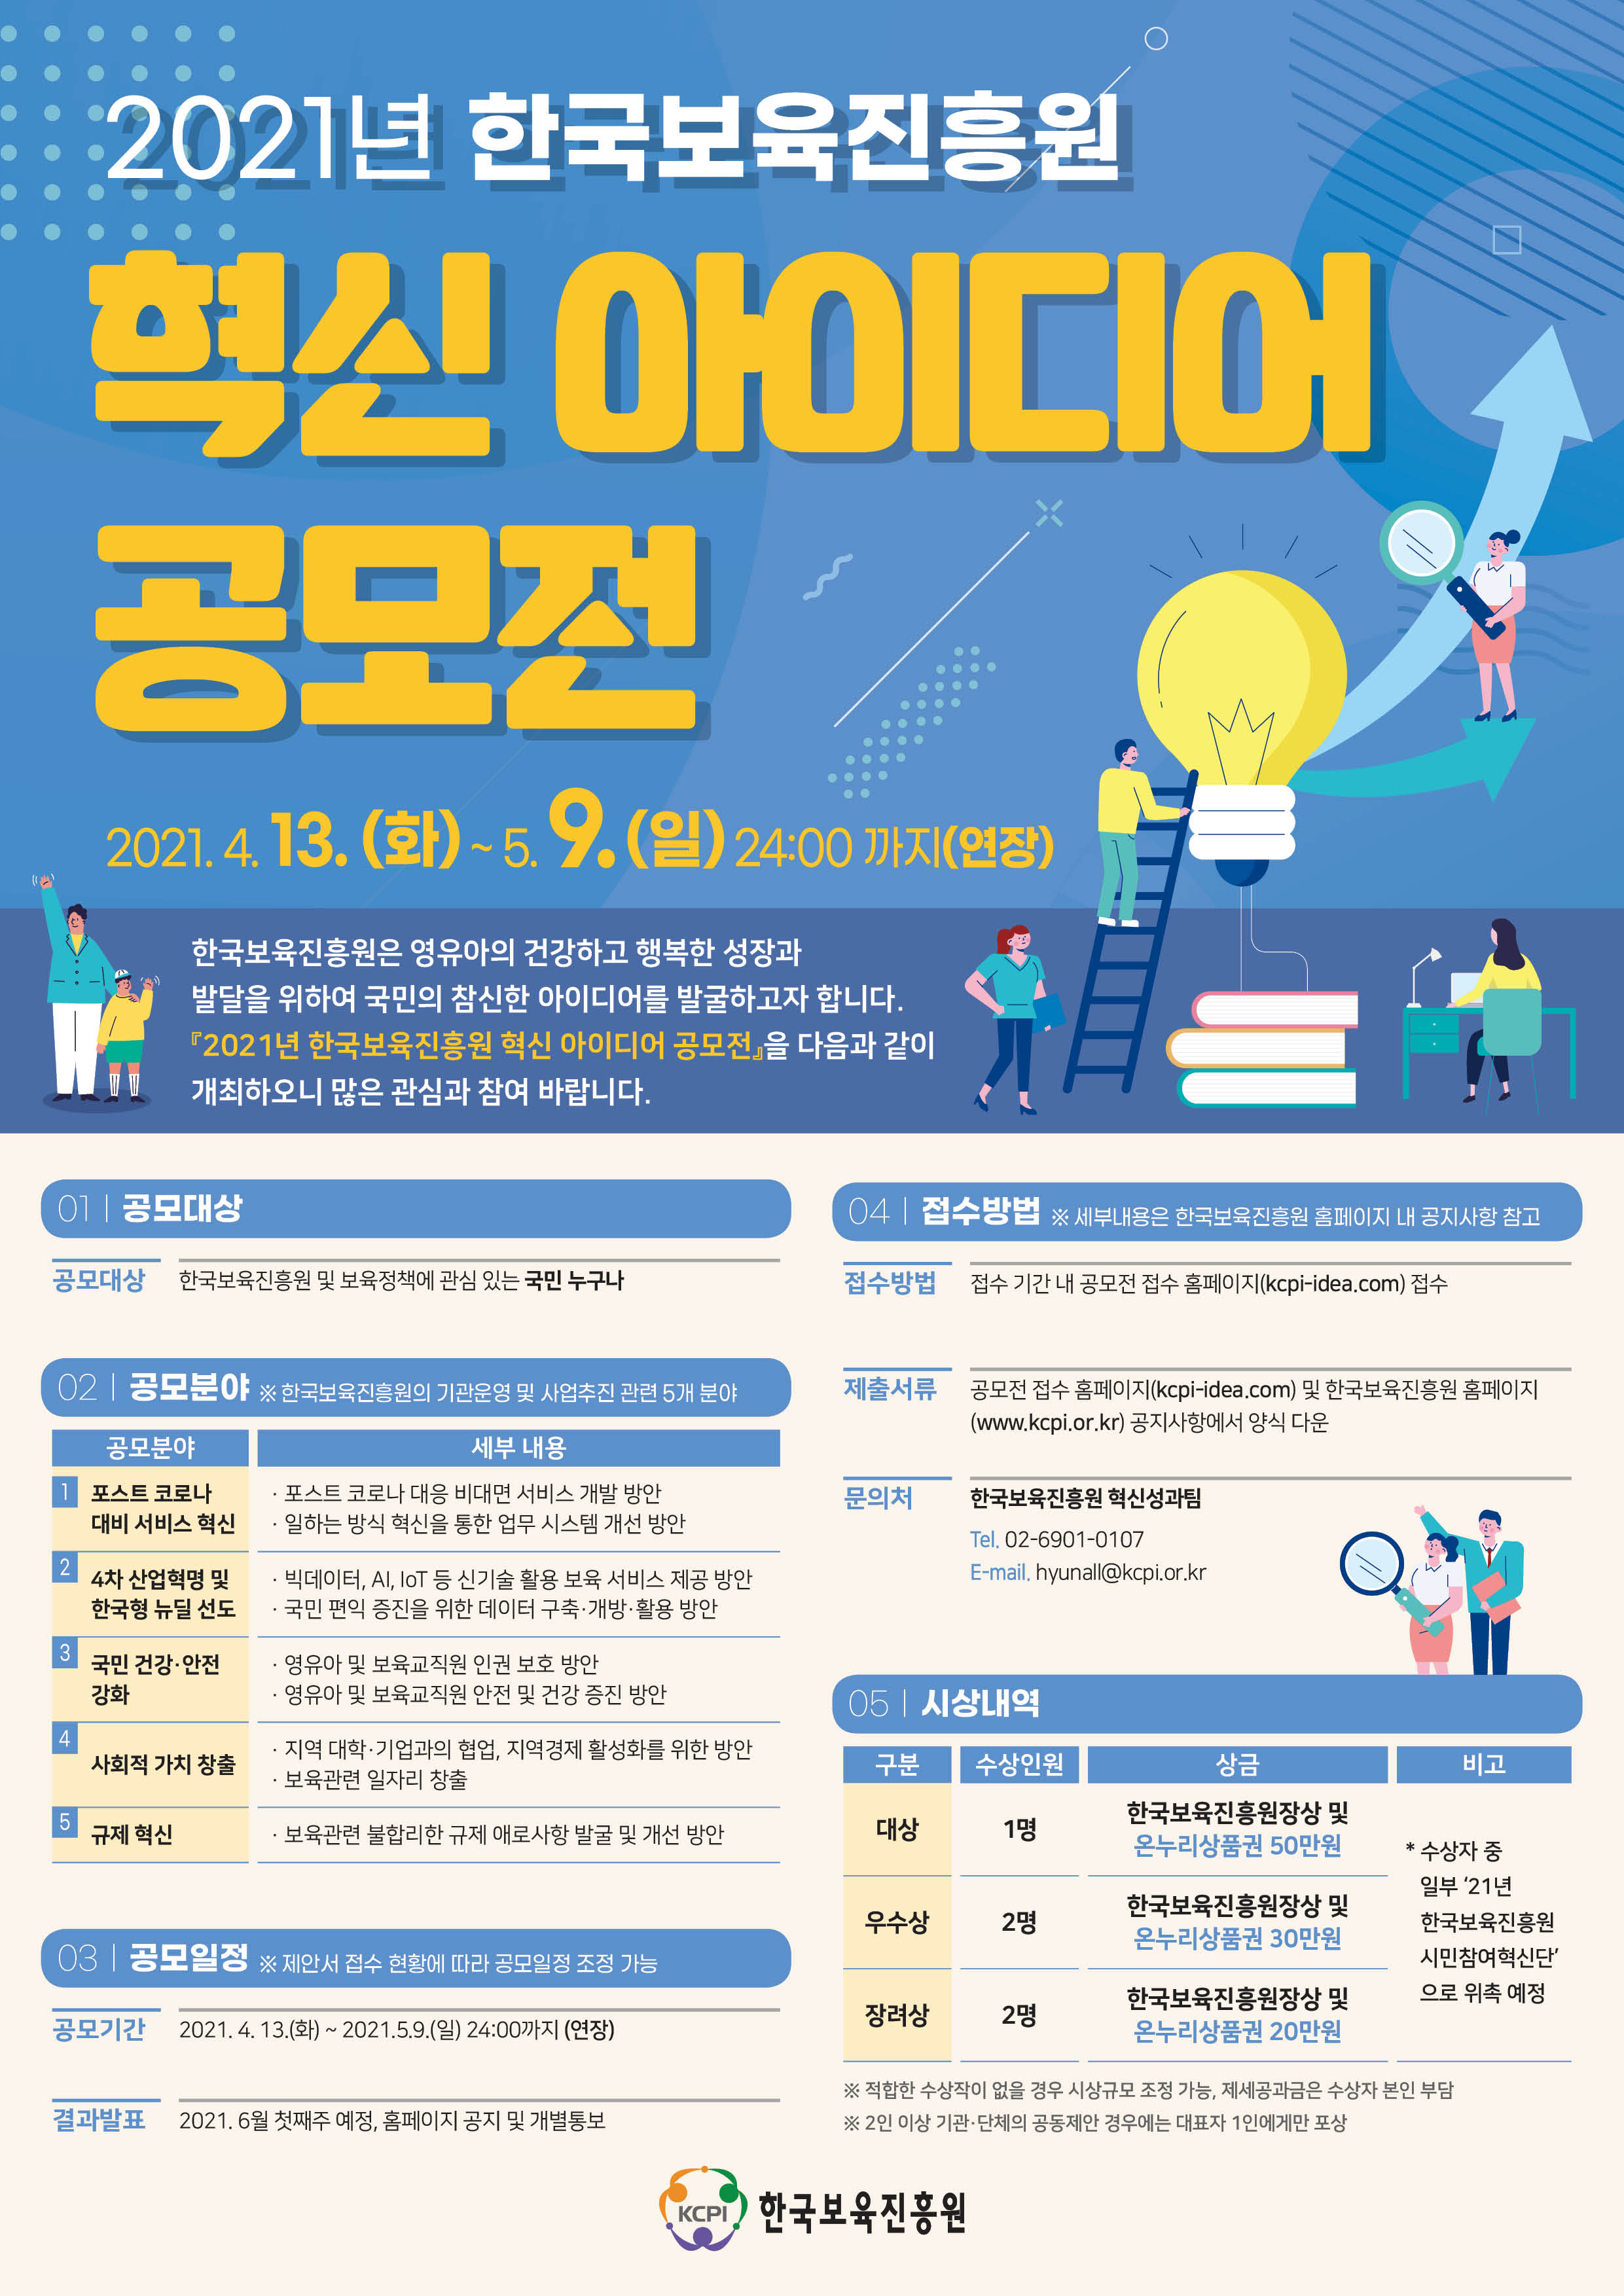 2021년 한국보육진흥원 혁신 아이디어 공모전